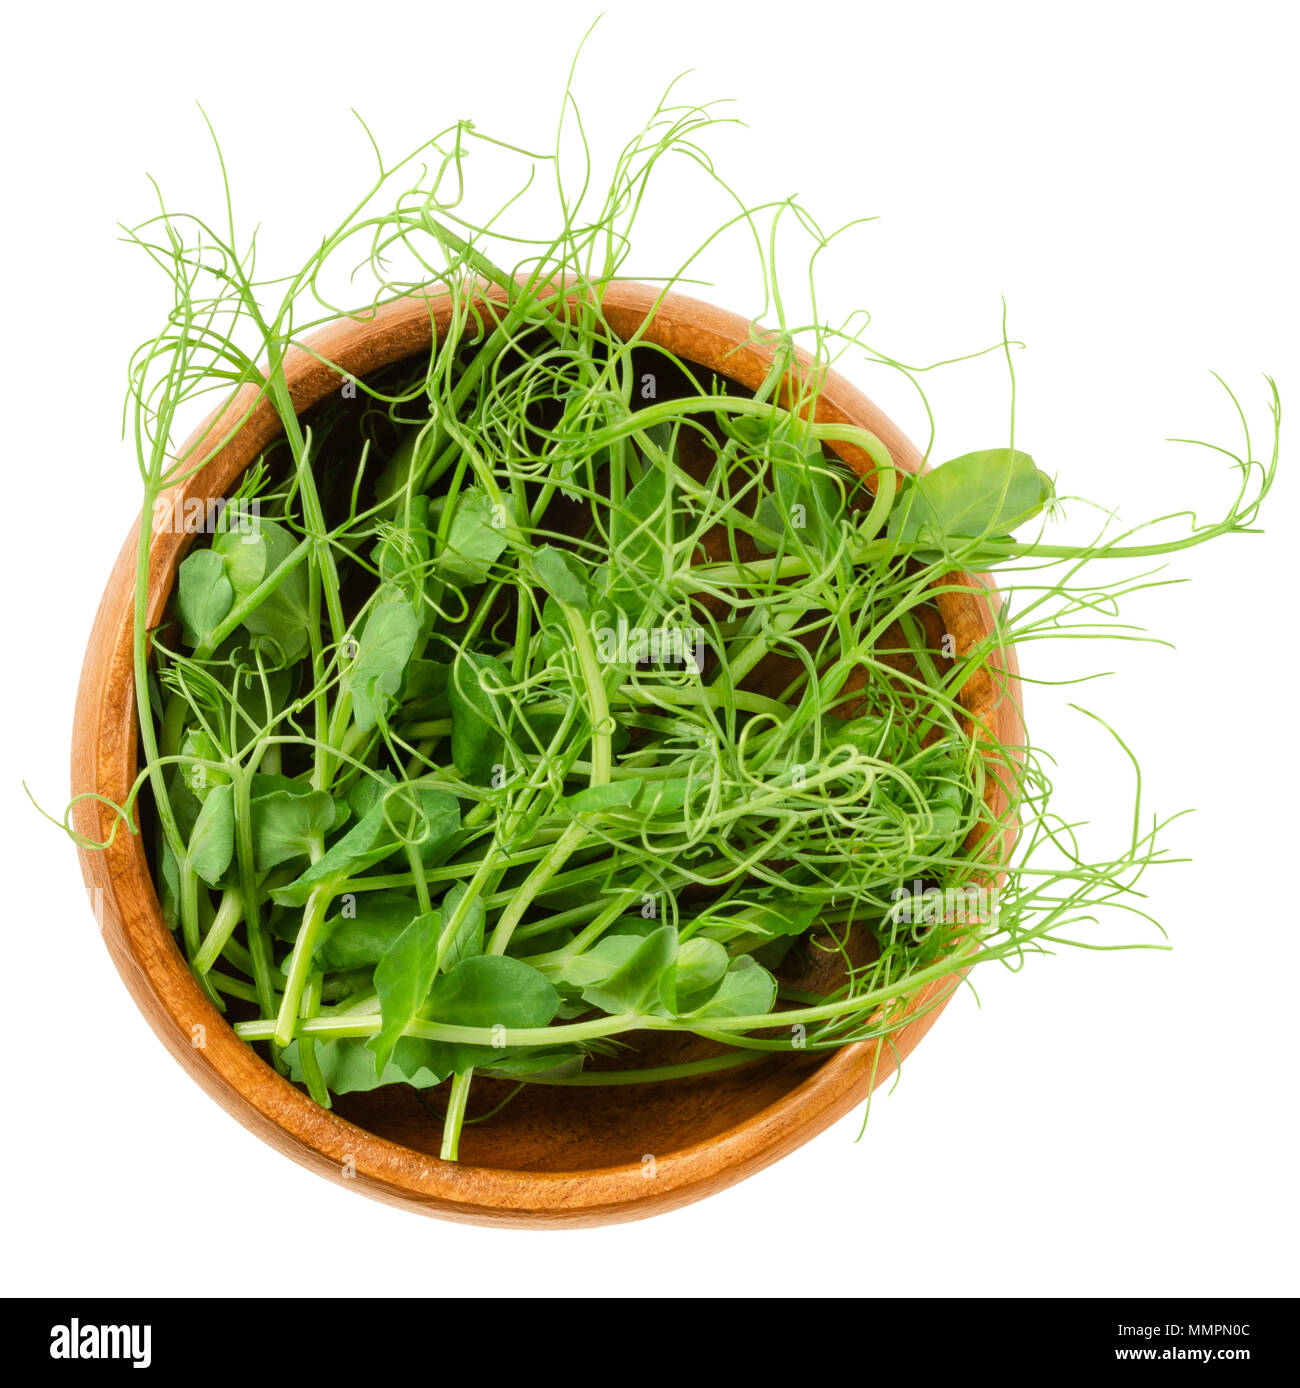 Il segnale di PEA microgreen nella ciotola di legno. Cotiledoni di Pisum sativum. Germogli verdi, giovani piante, piantine e i germogli. Commestibile, materie organiche e vegane. Foto Stock